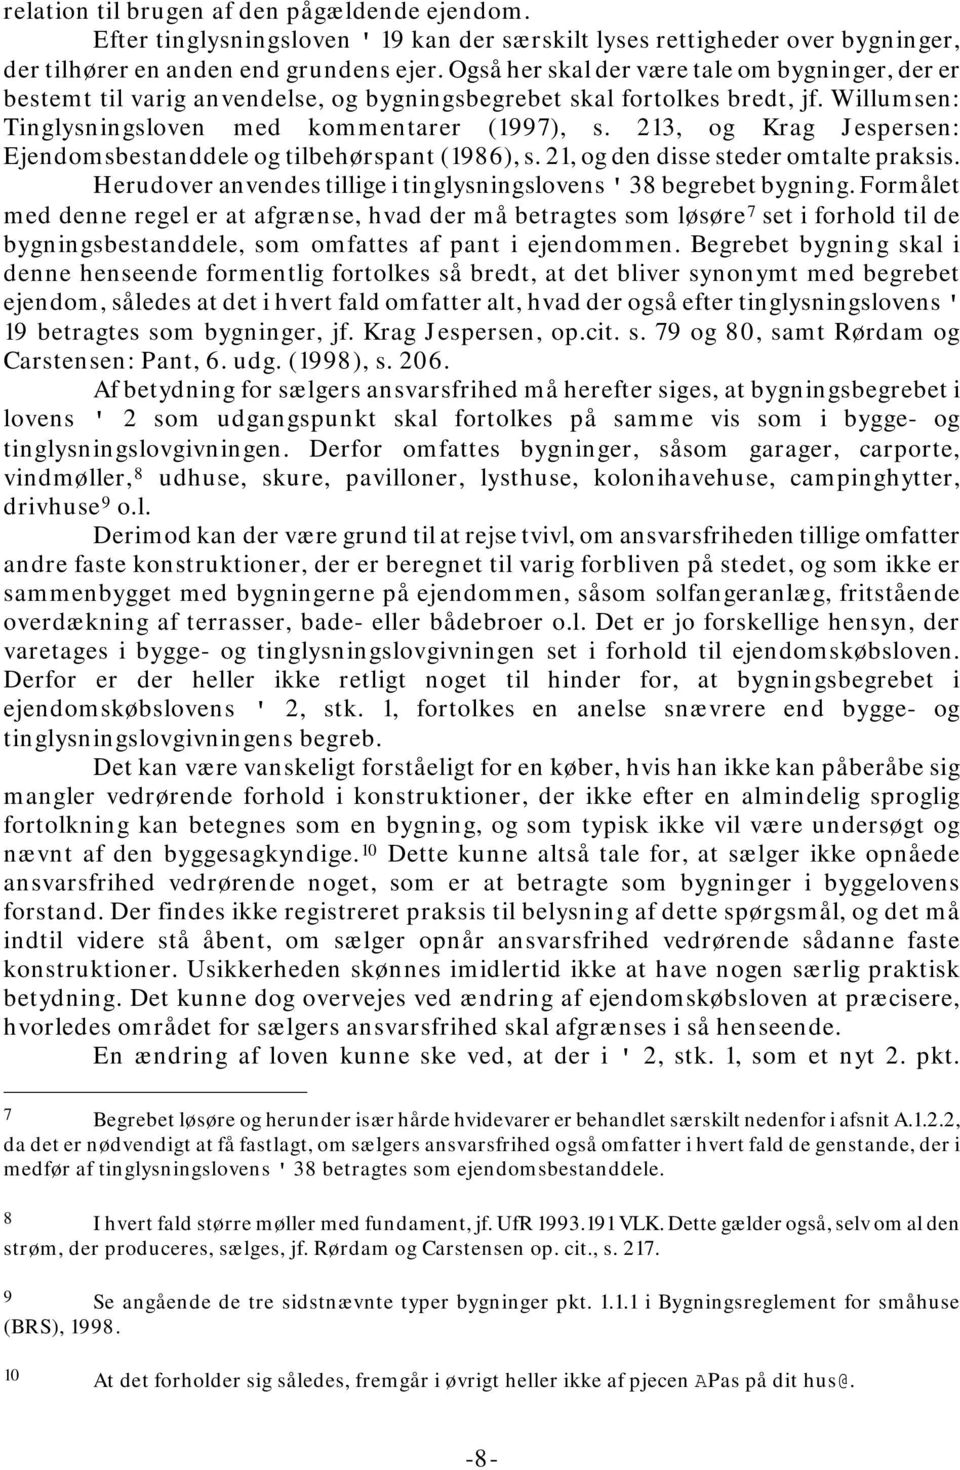 213, og Krag Jespersen: Ejendomsbestanddele og tilbehørspant (1986), s. 21, og den disse steder omtalte praksis. Herudover anvendes tillige i tinglysningslovens ' 38 begrebet bygning.